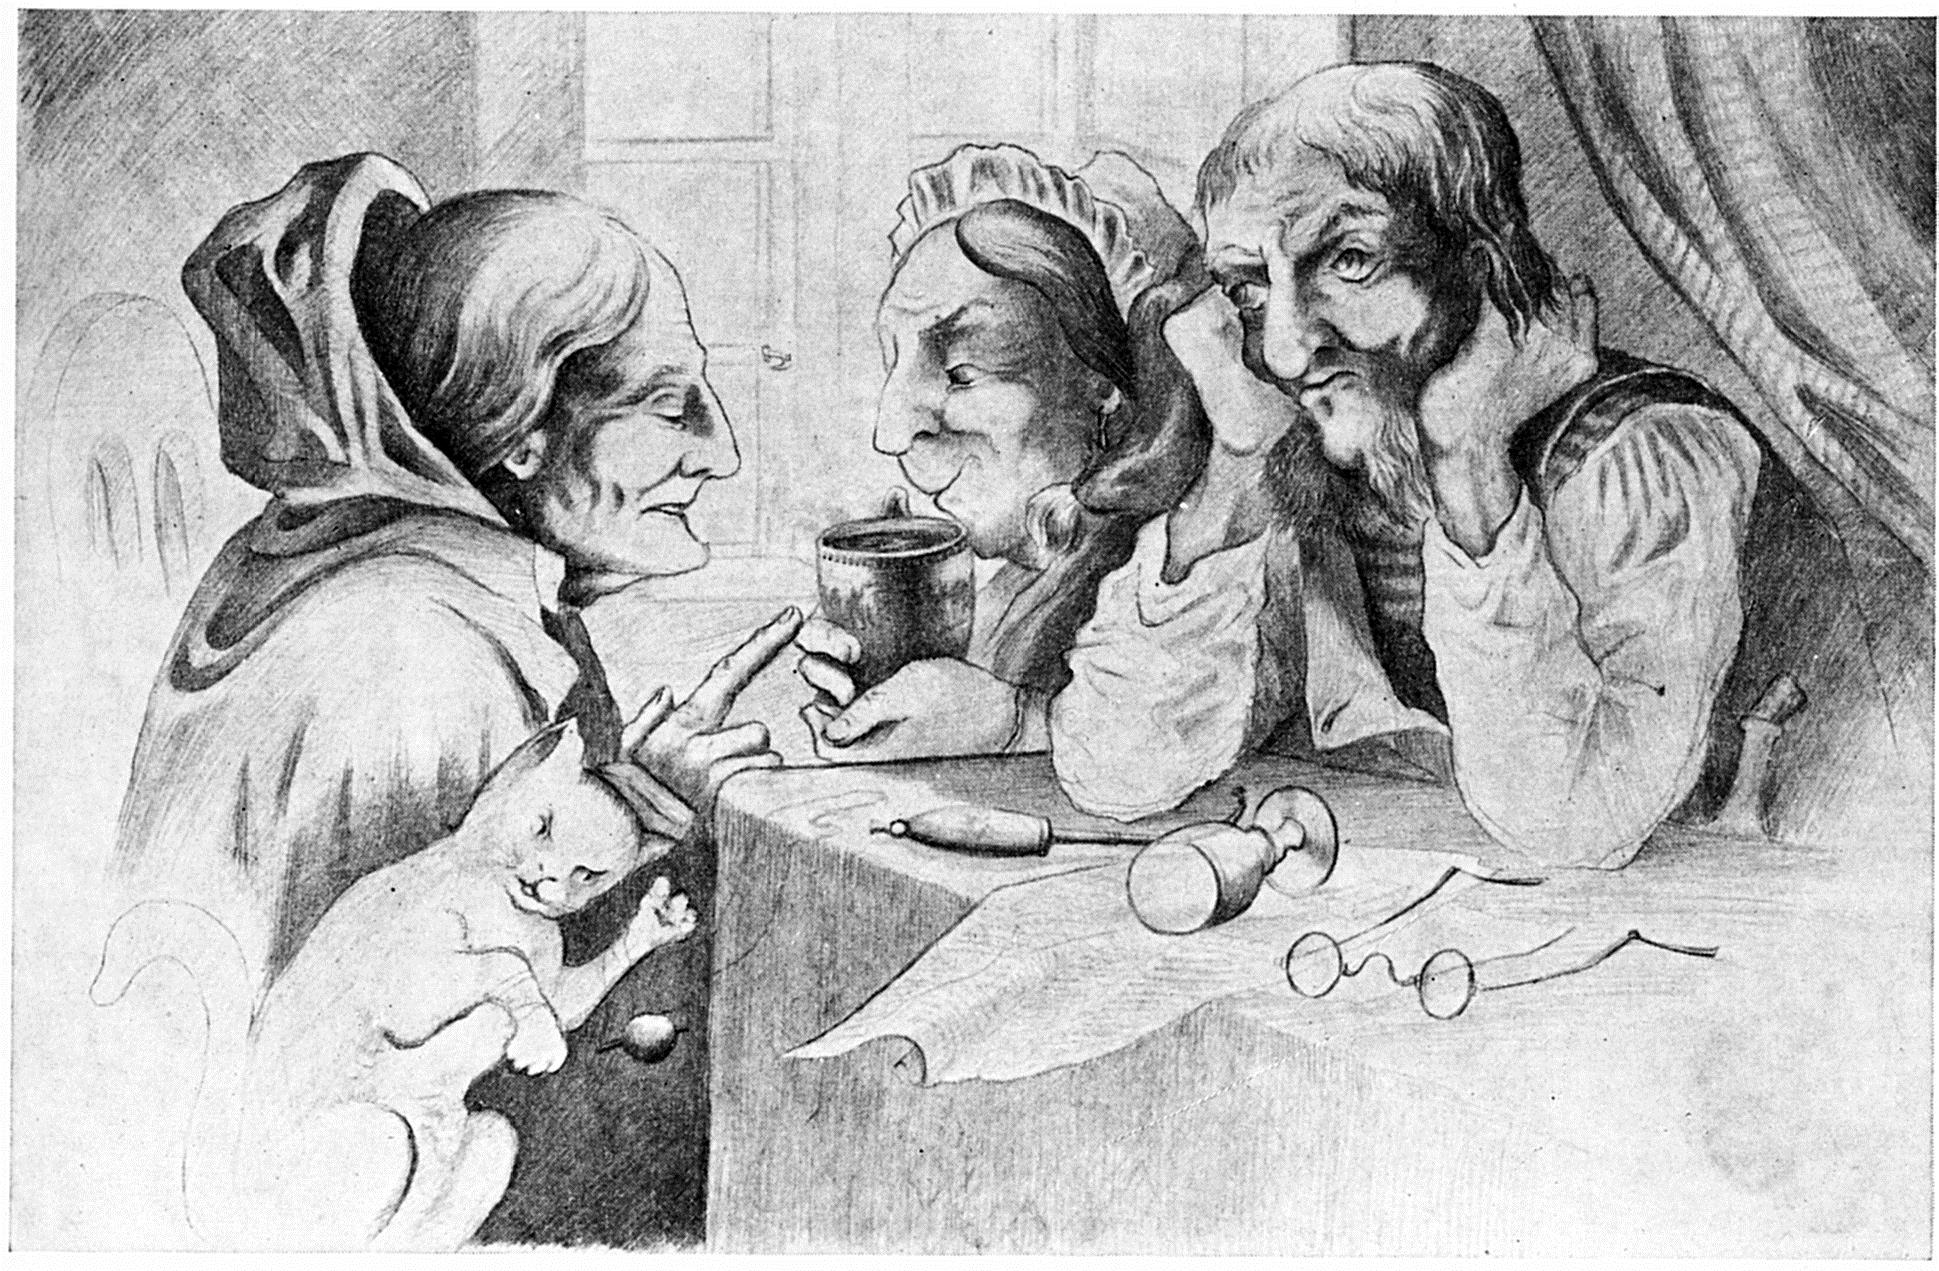 Takto ztvárnil typické „drbny“ norský malíř Theodor Kittelsen (1857–1914) v jedné své černobílé kresbě.